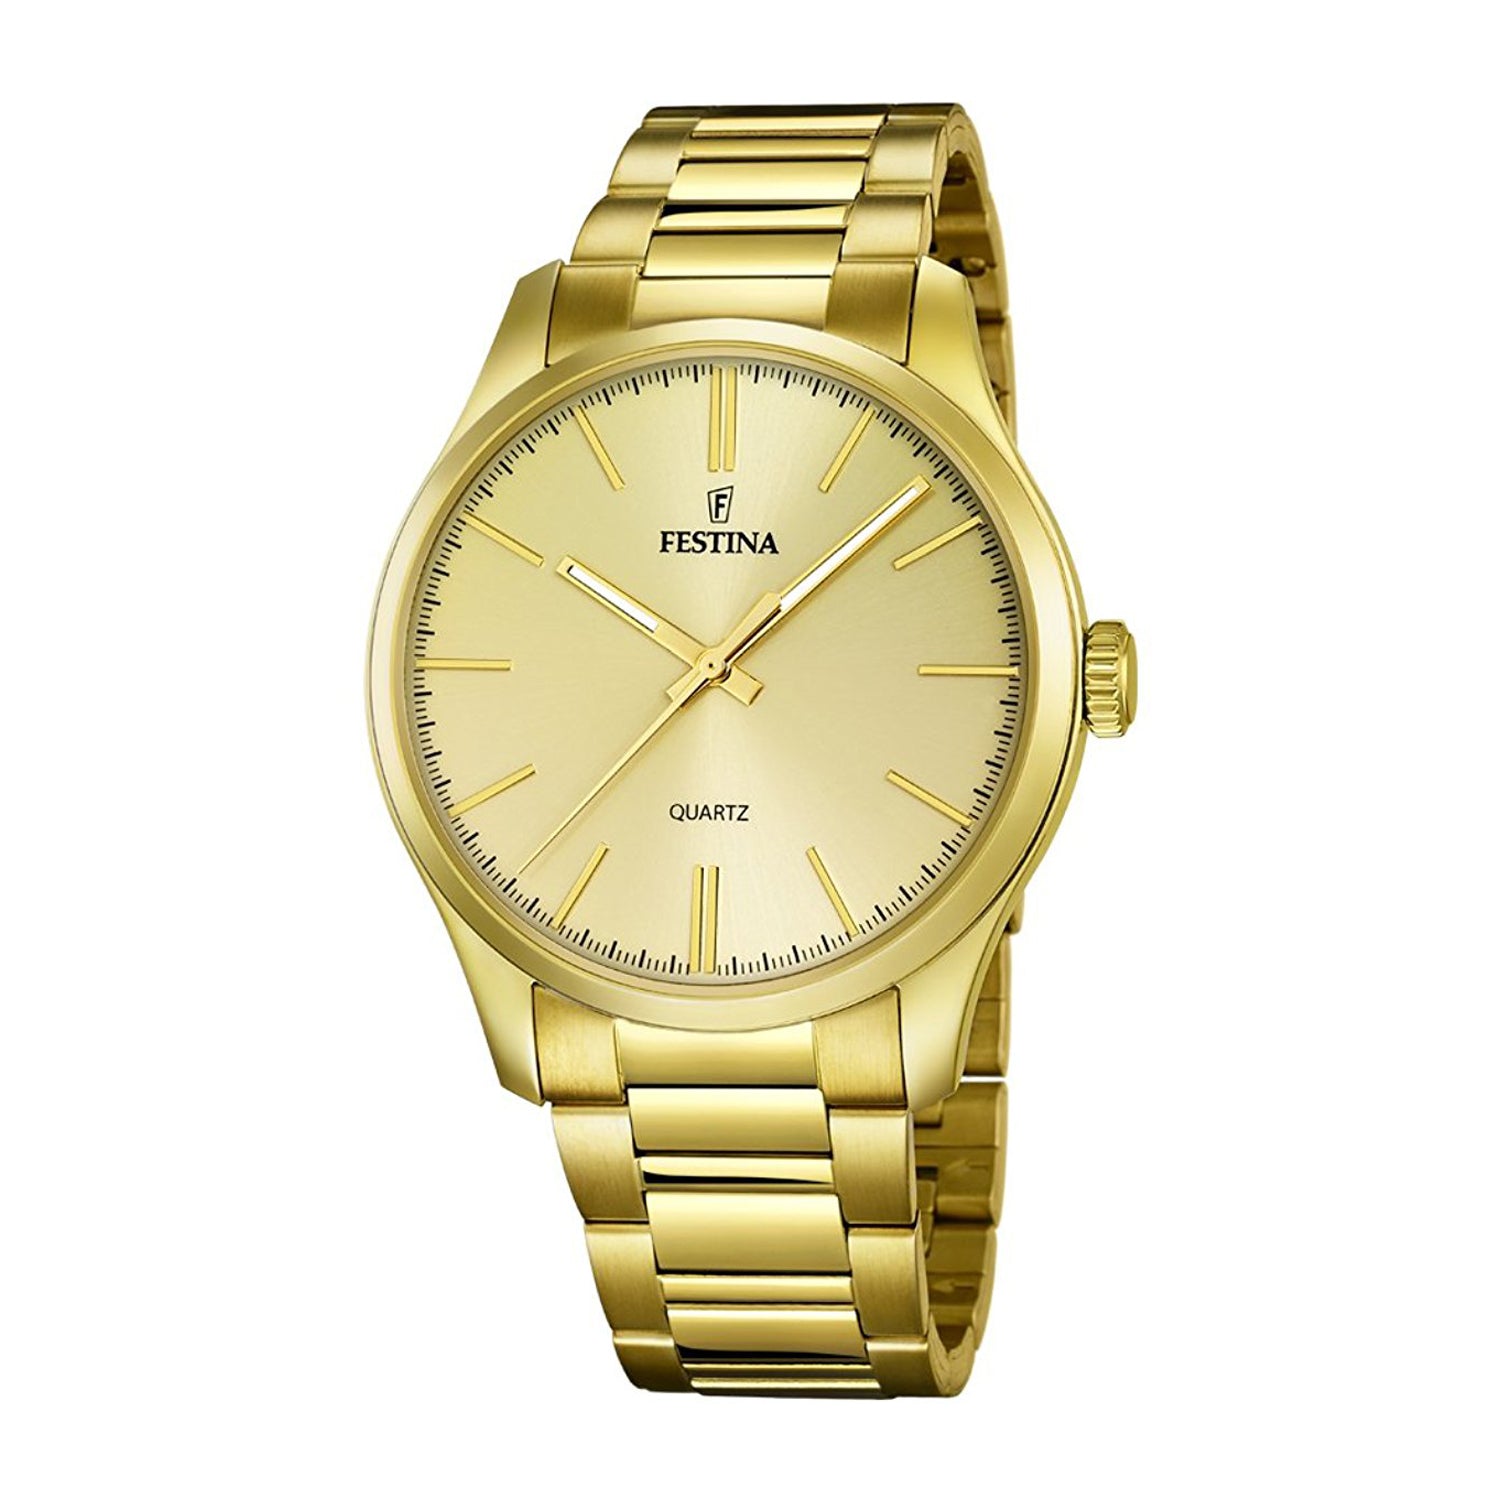 Festina Men's Quartz Watch Gold Dial - F16808/1